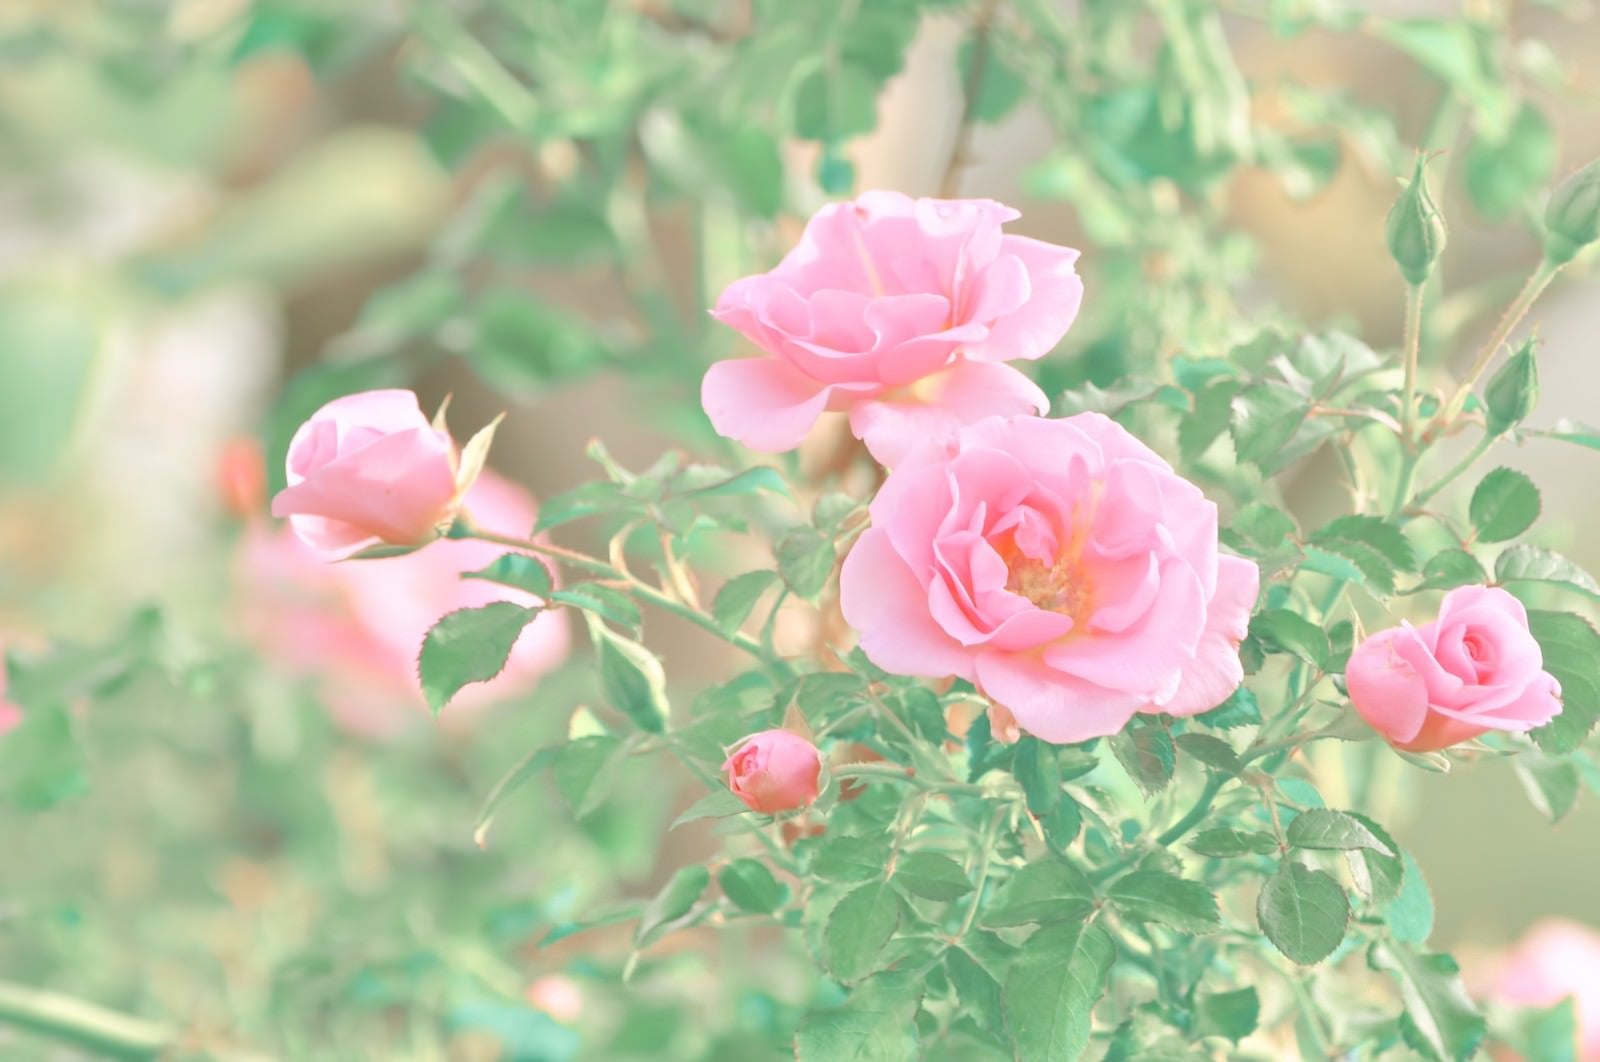 「ピンク色の薔薇」の写真